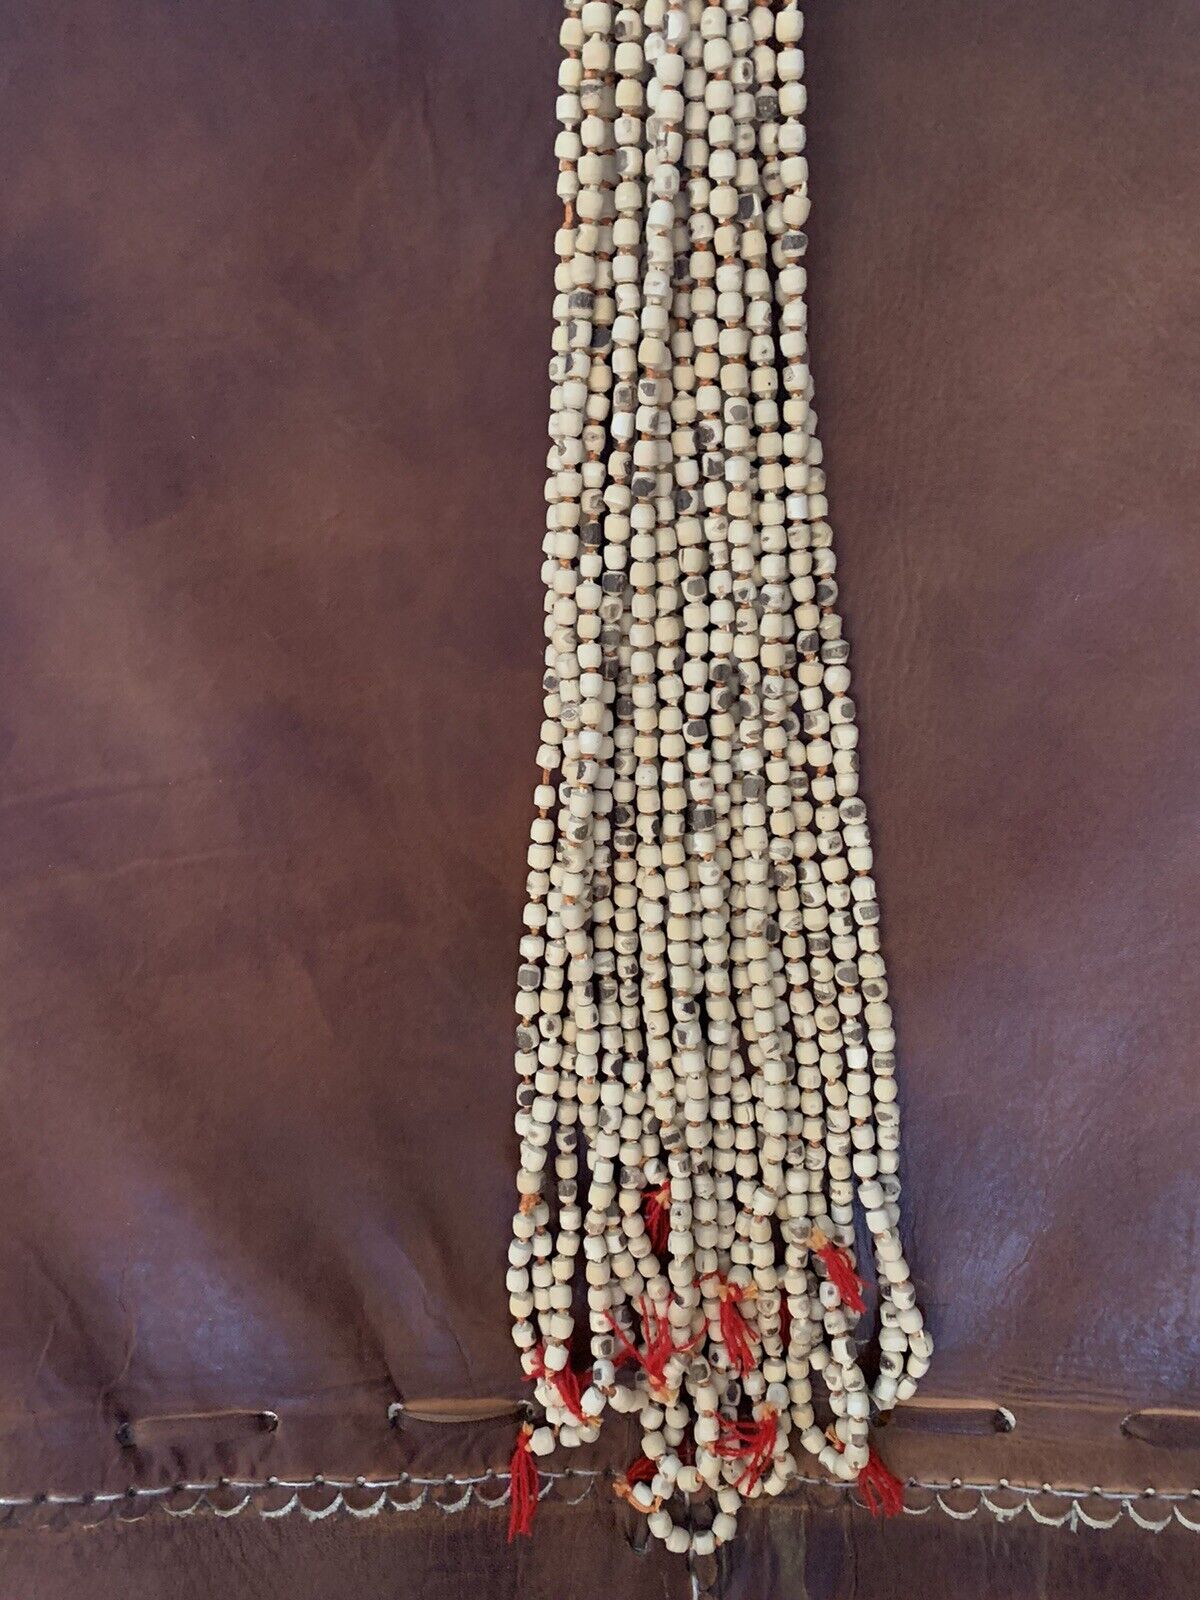 Tibet Buddhist Wood Prayer Beads Mala Necklace 24”